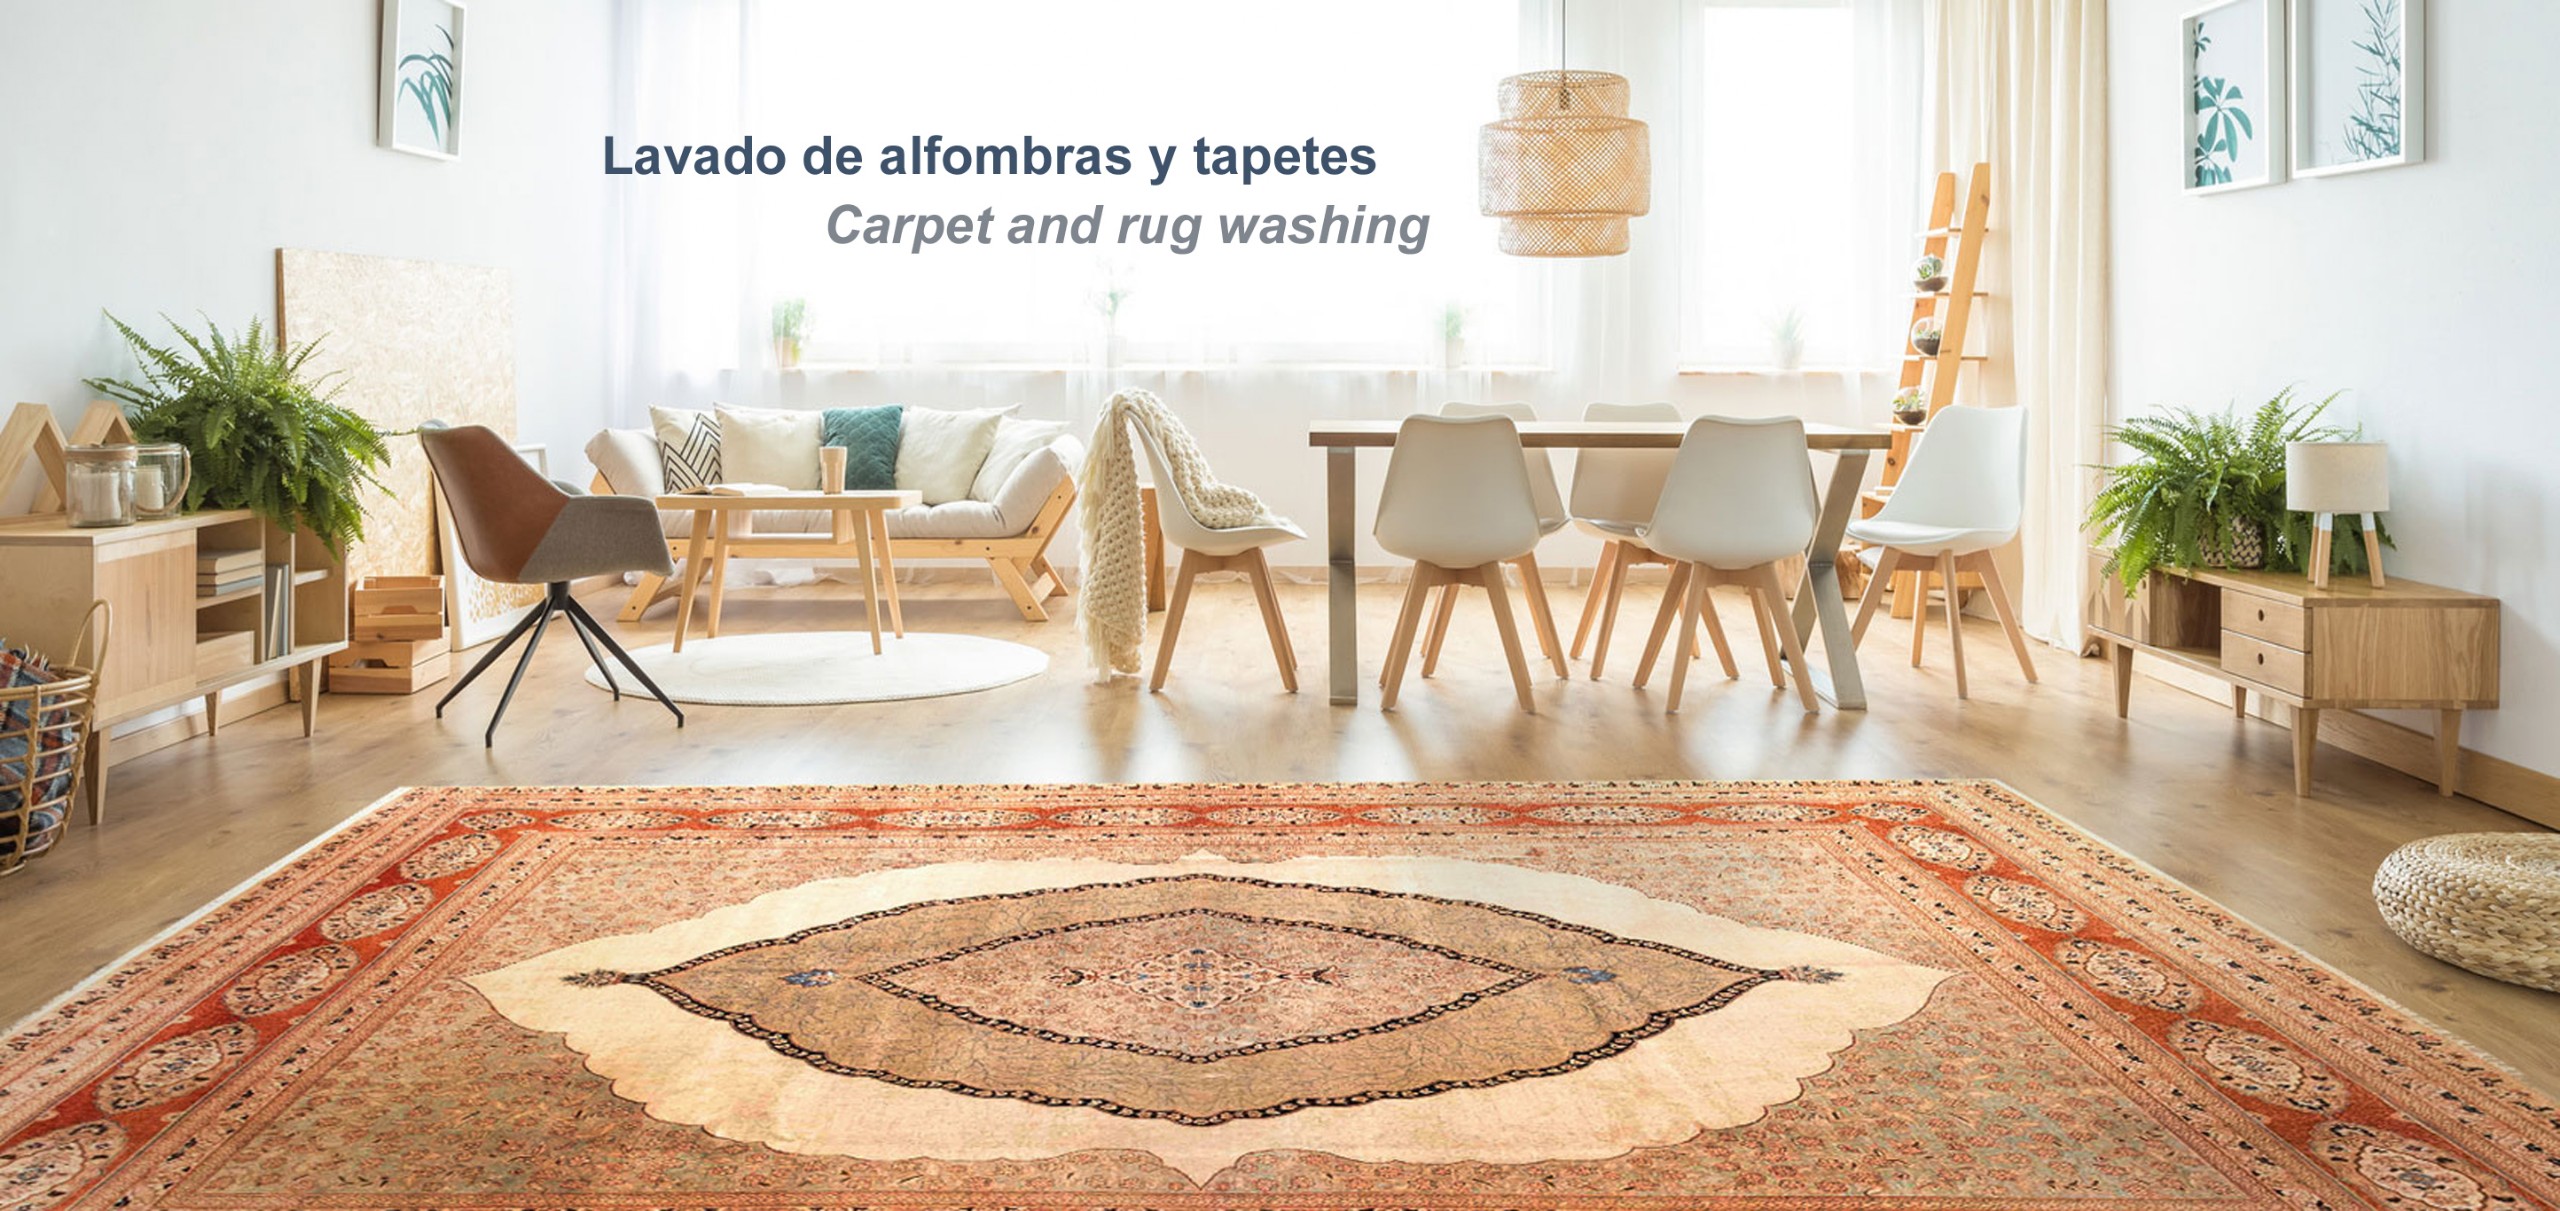 Guía práctica para el lavado de alfombras, tapizones y muebles